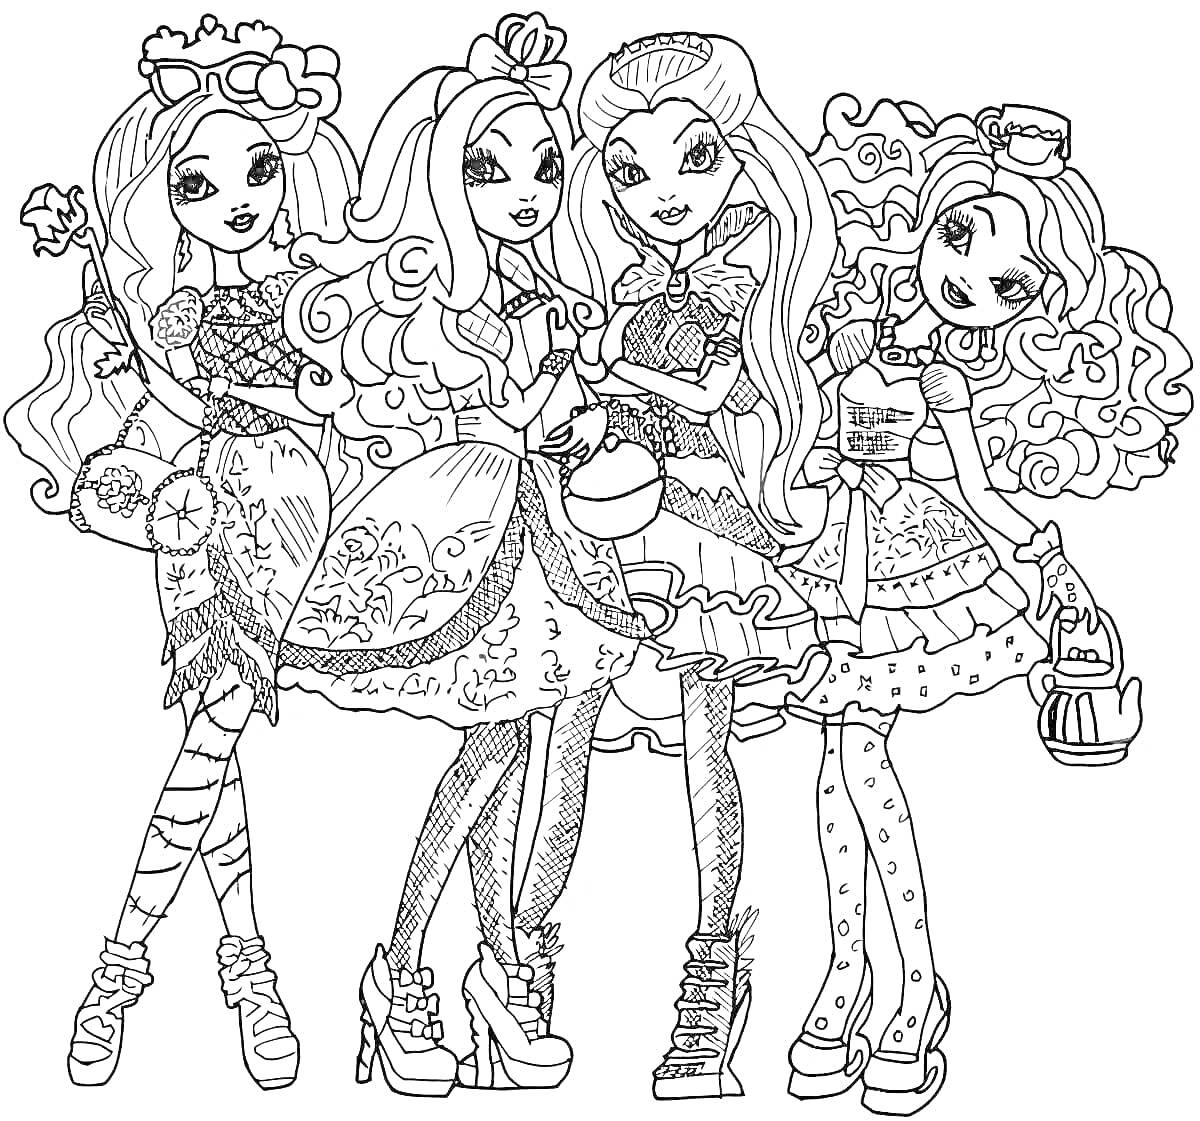 Раскраска Четыре куклы из серии Cave Club с различными прическами и нарядами, стоящие в ряд и улыбающиеся. У каждой куклы есть свой уникальный аксессуар - факел, чайник и другие.